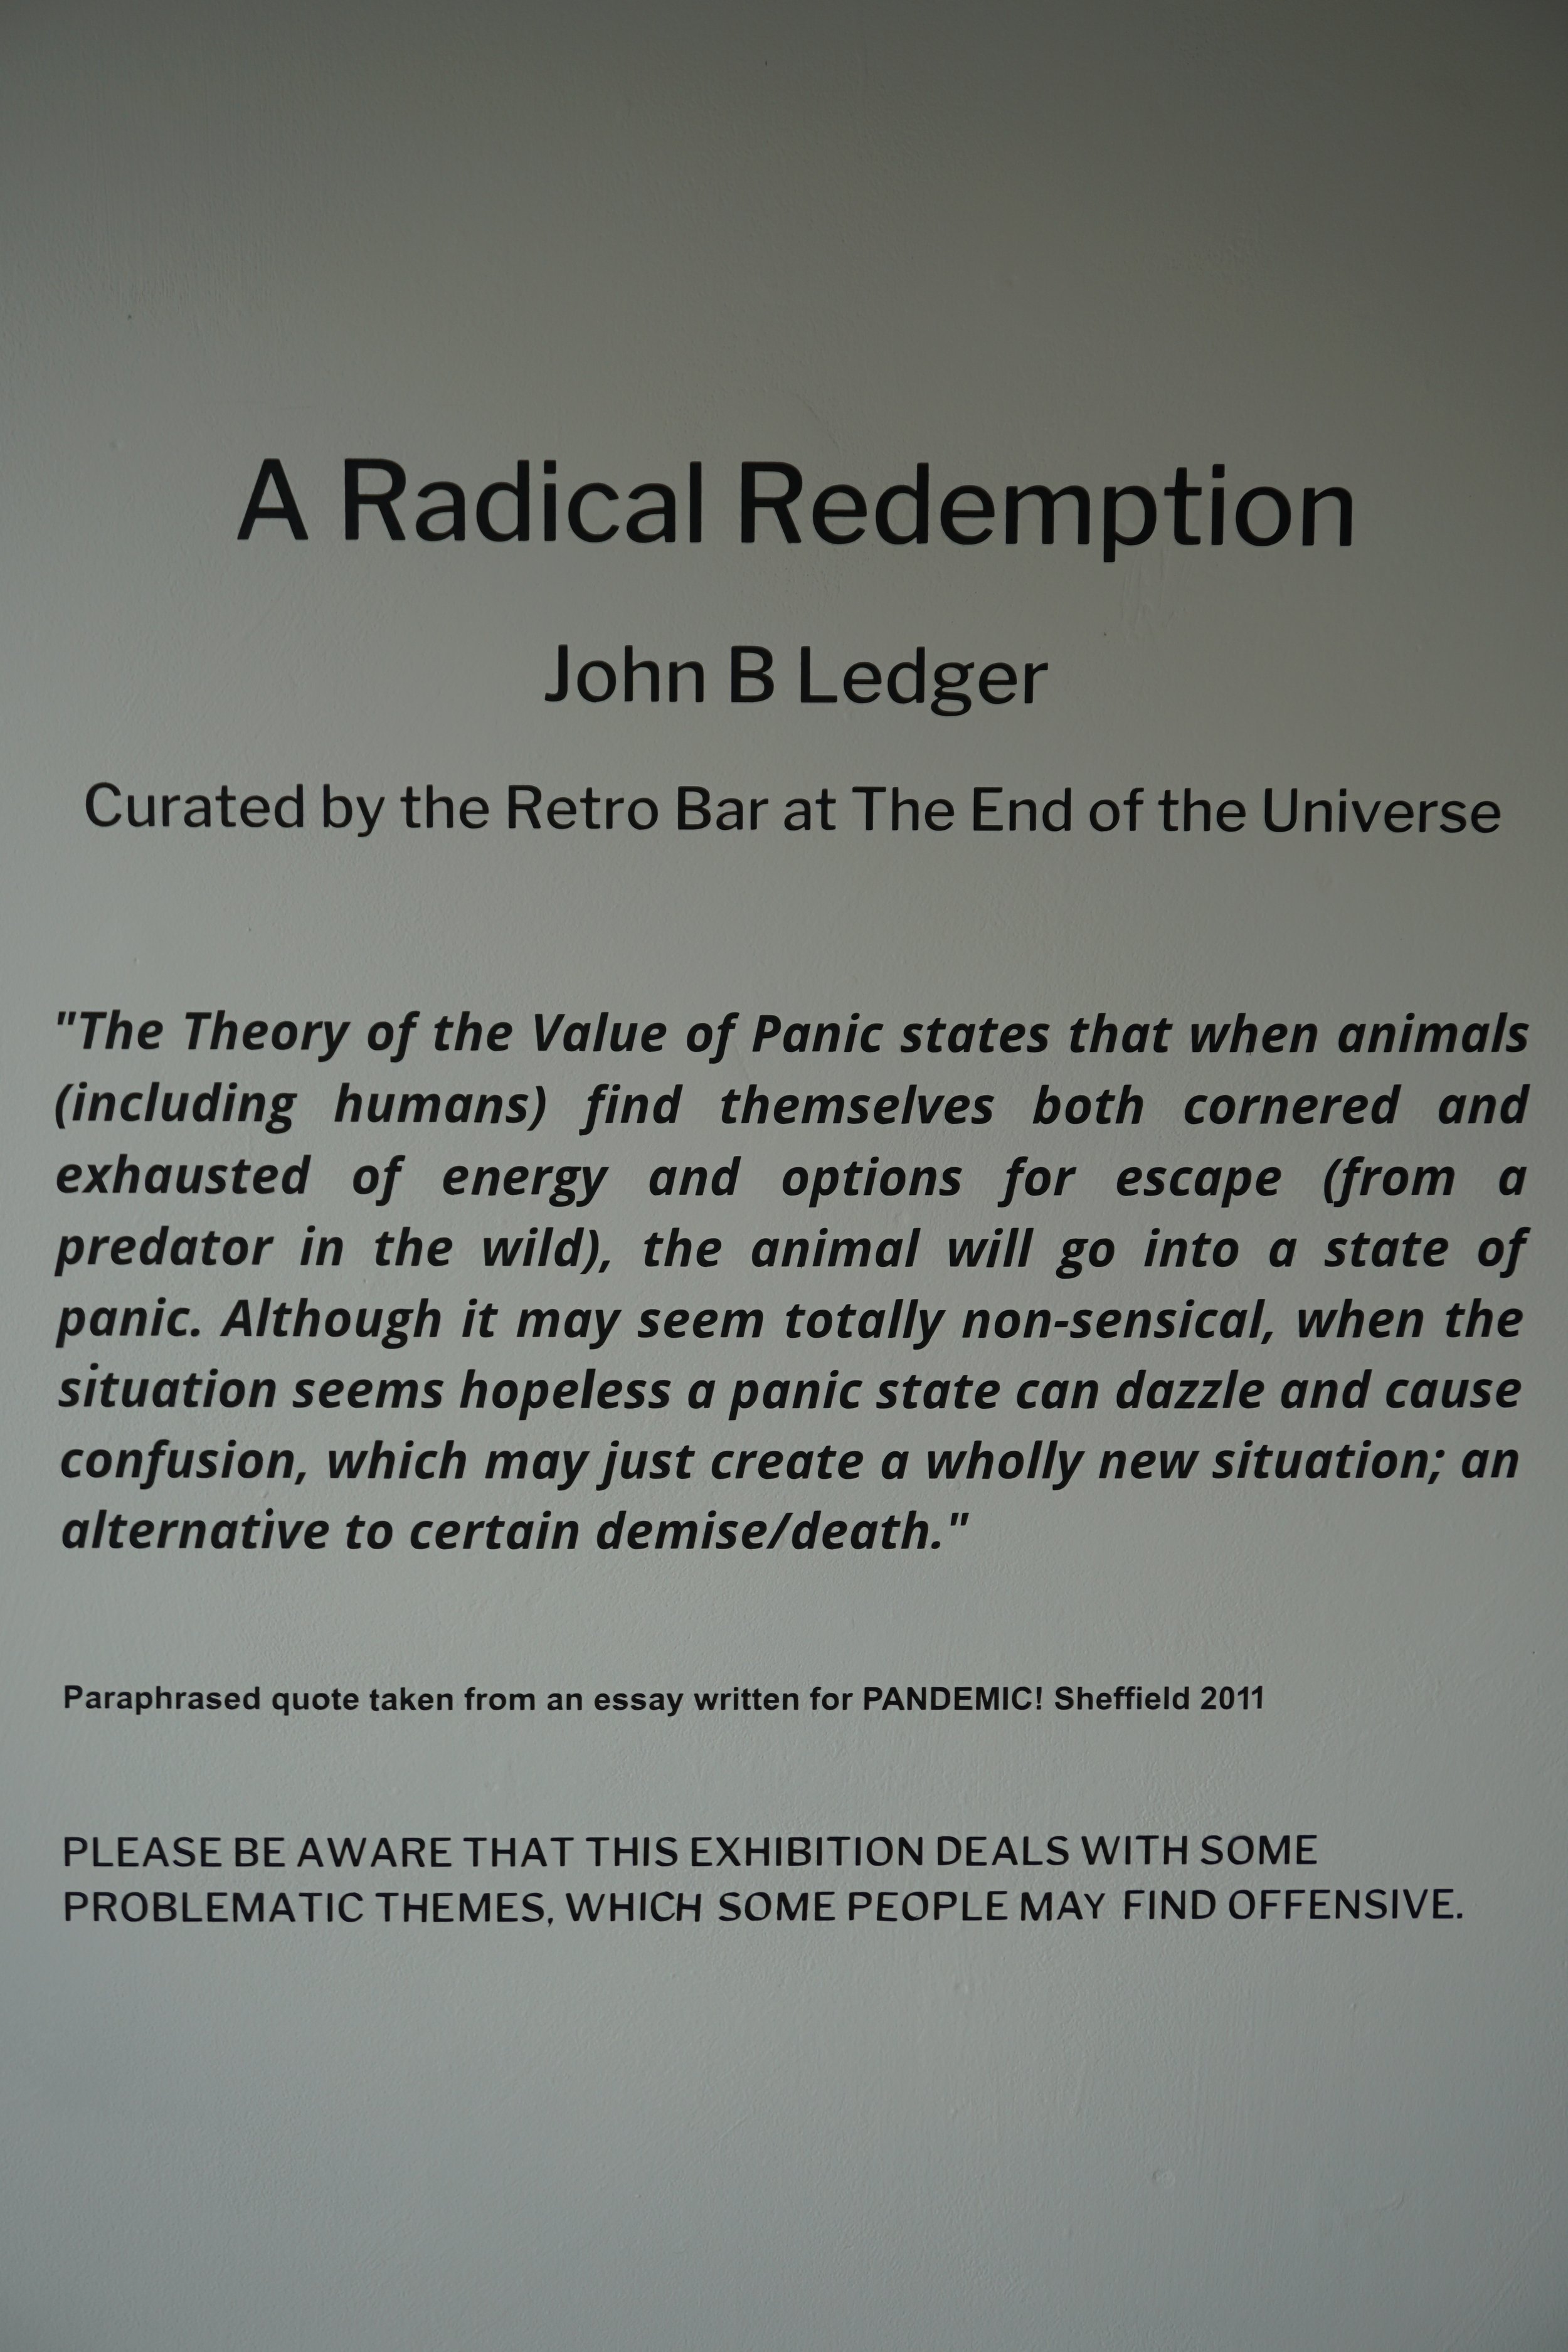 A RADICAL REDEMPTION - JOHN LEDGERDSC00387.JPG